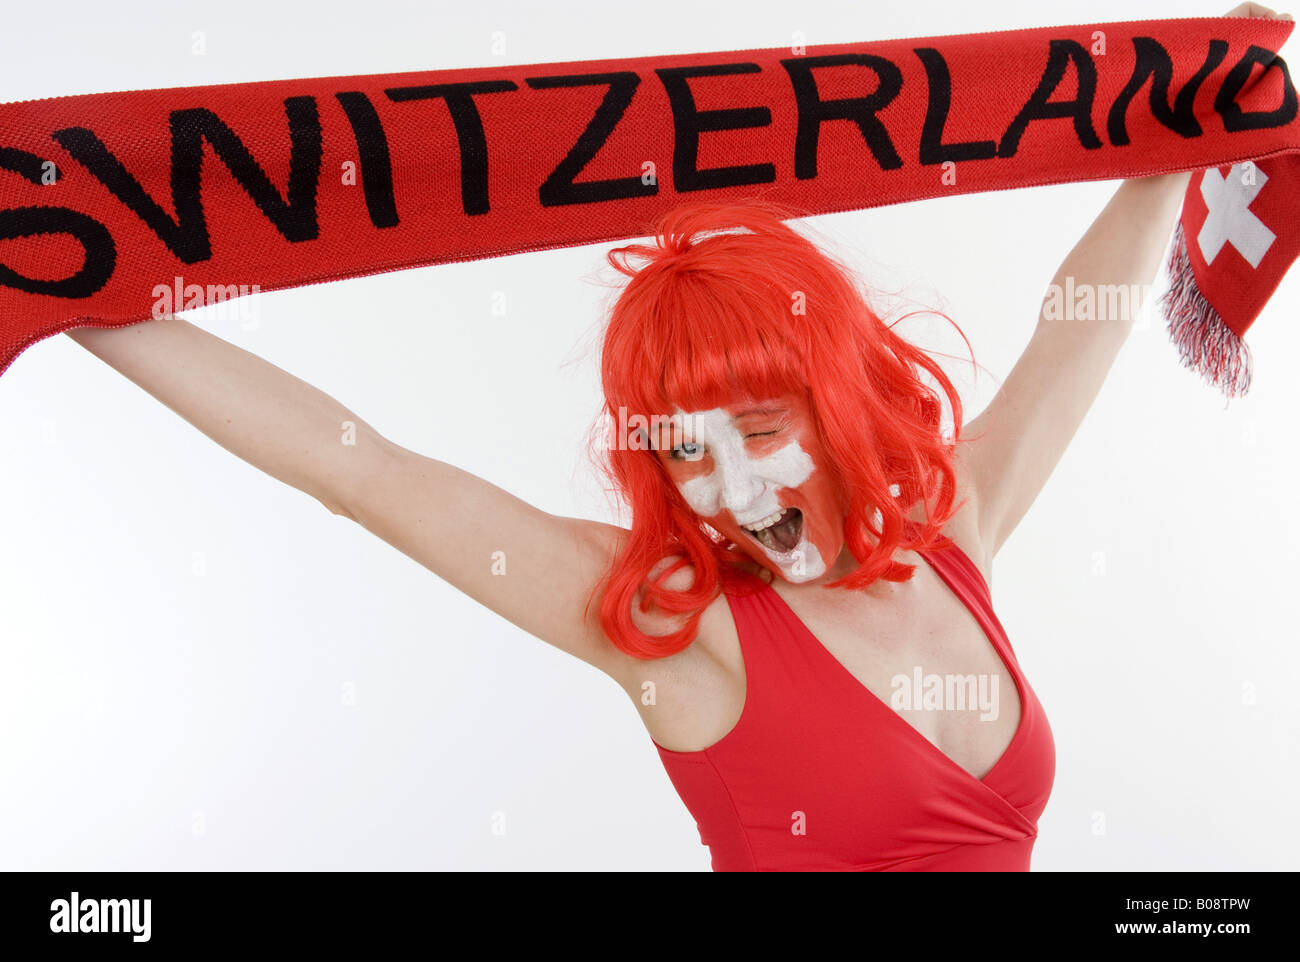 woman as Switzerland fan, holding a fan scarf over her head Stock Photo